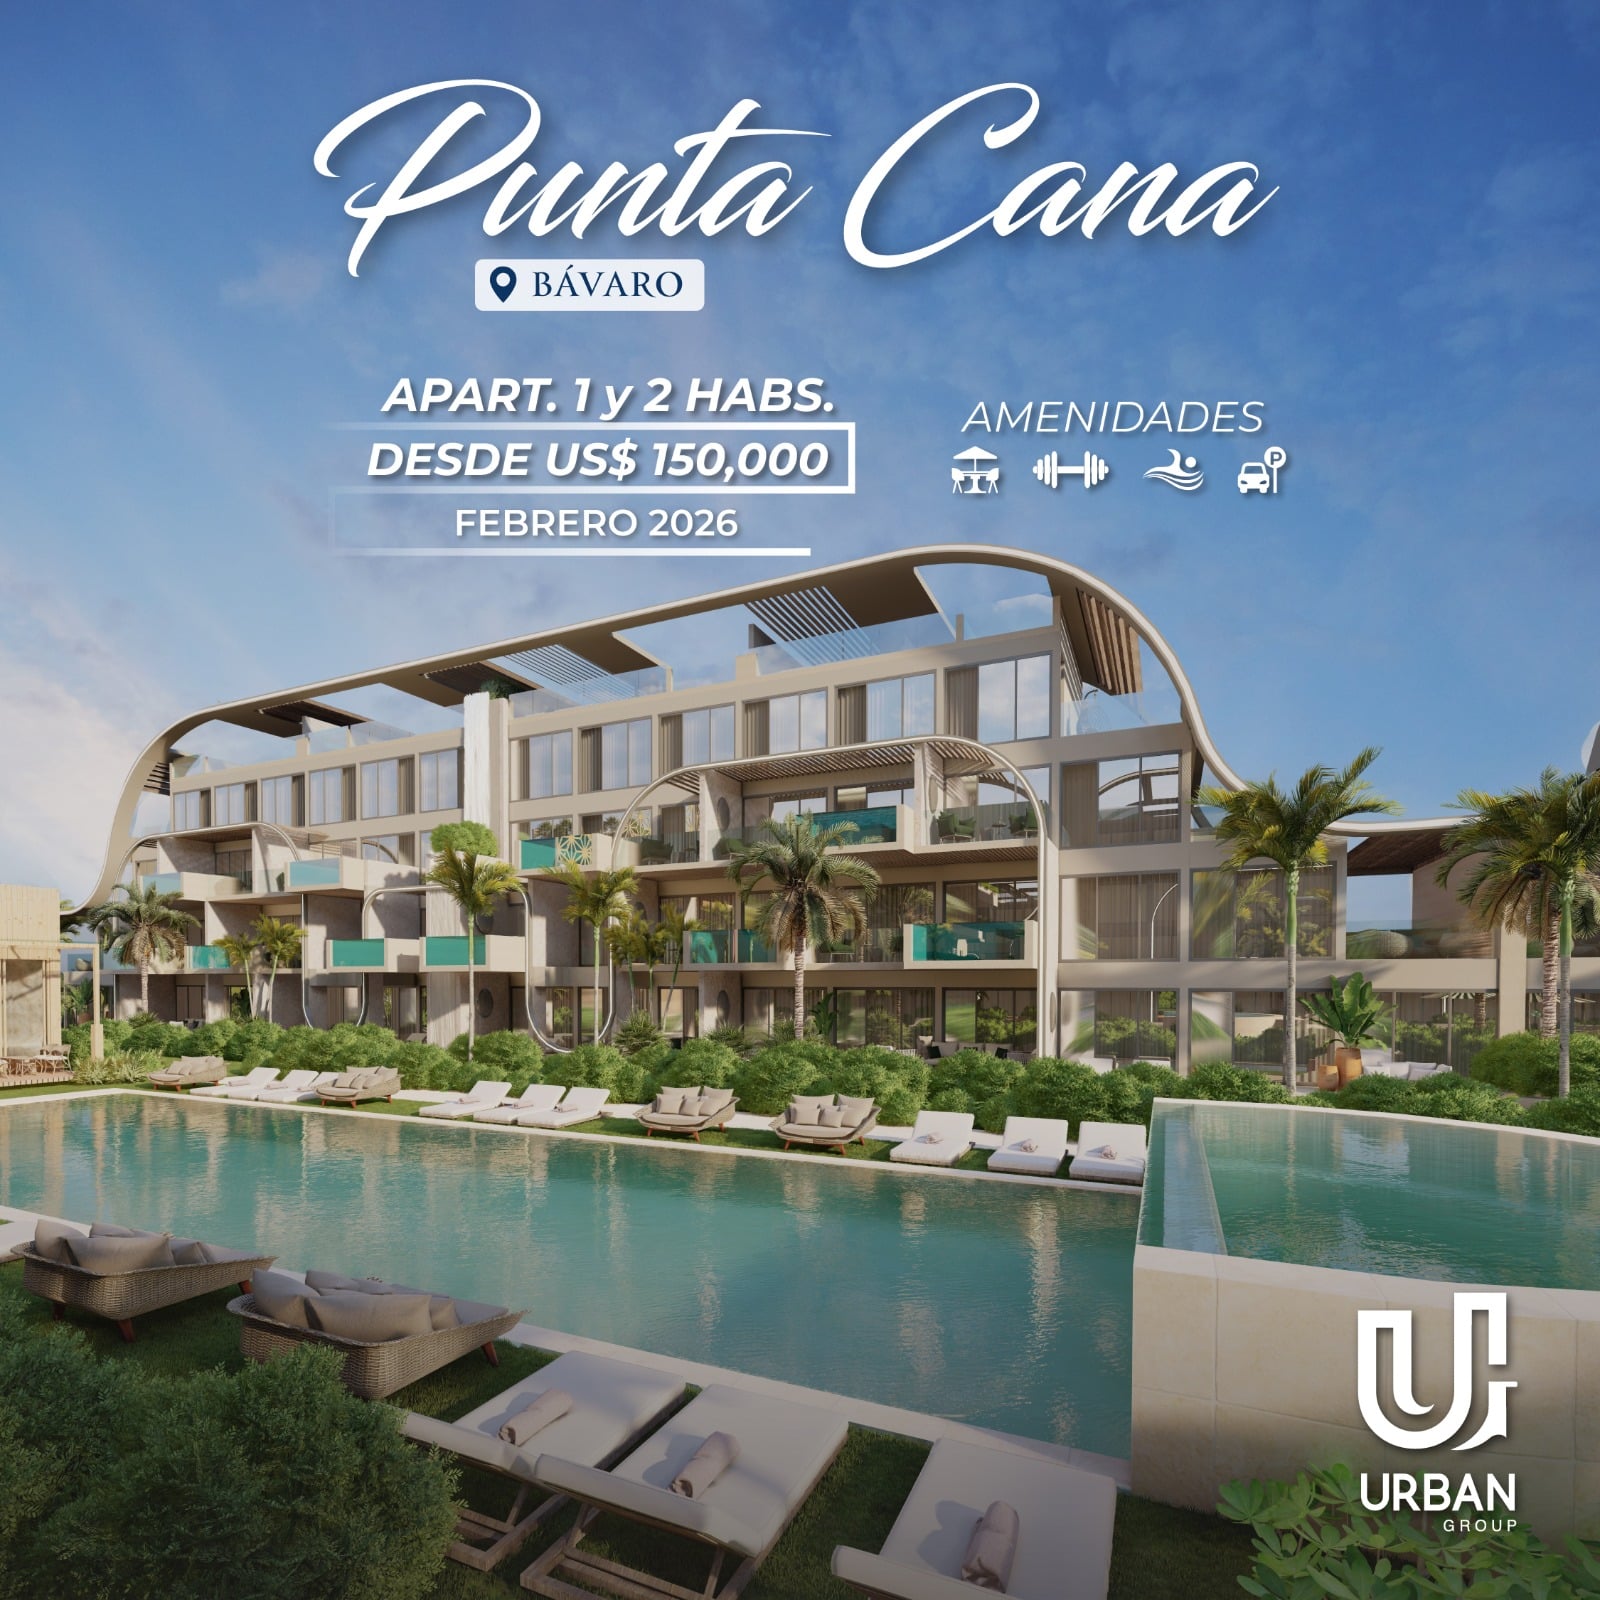 Apartamentos de 1 & 2 Habitaciones Desde US$150,000 en Punta Cana